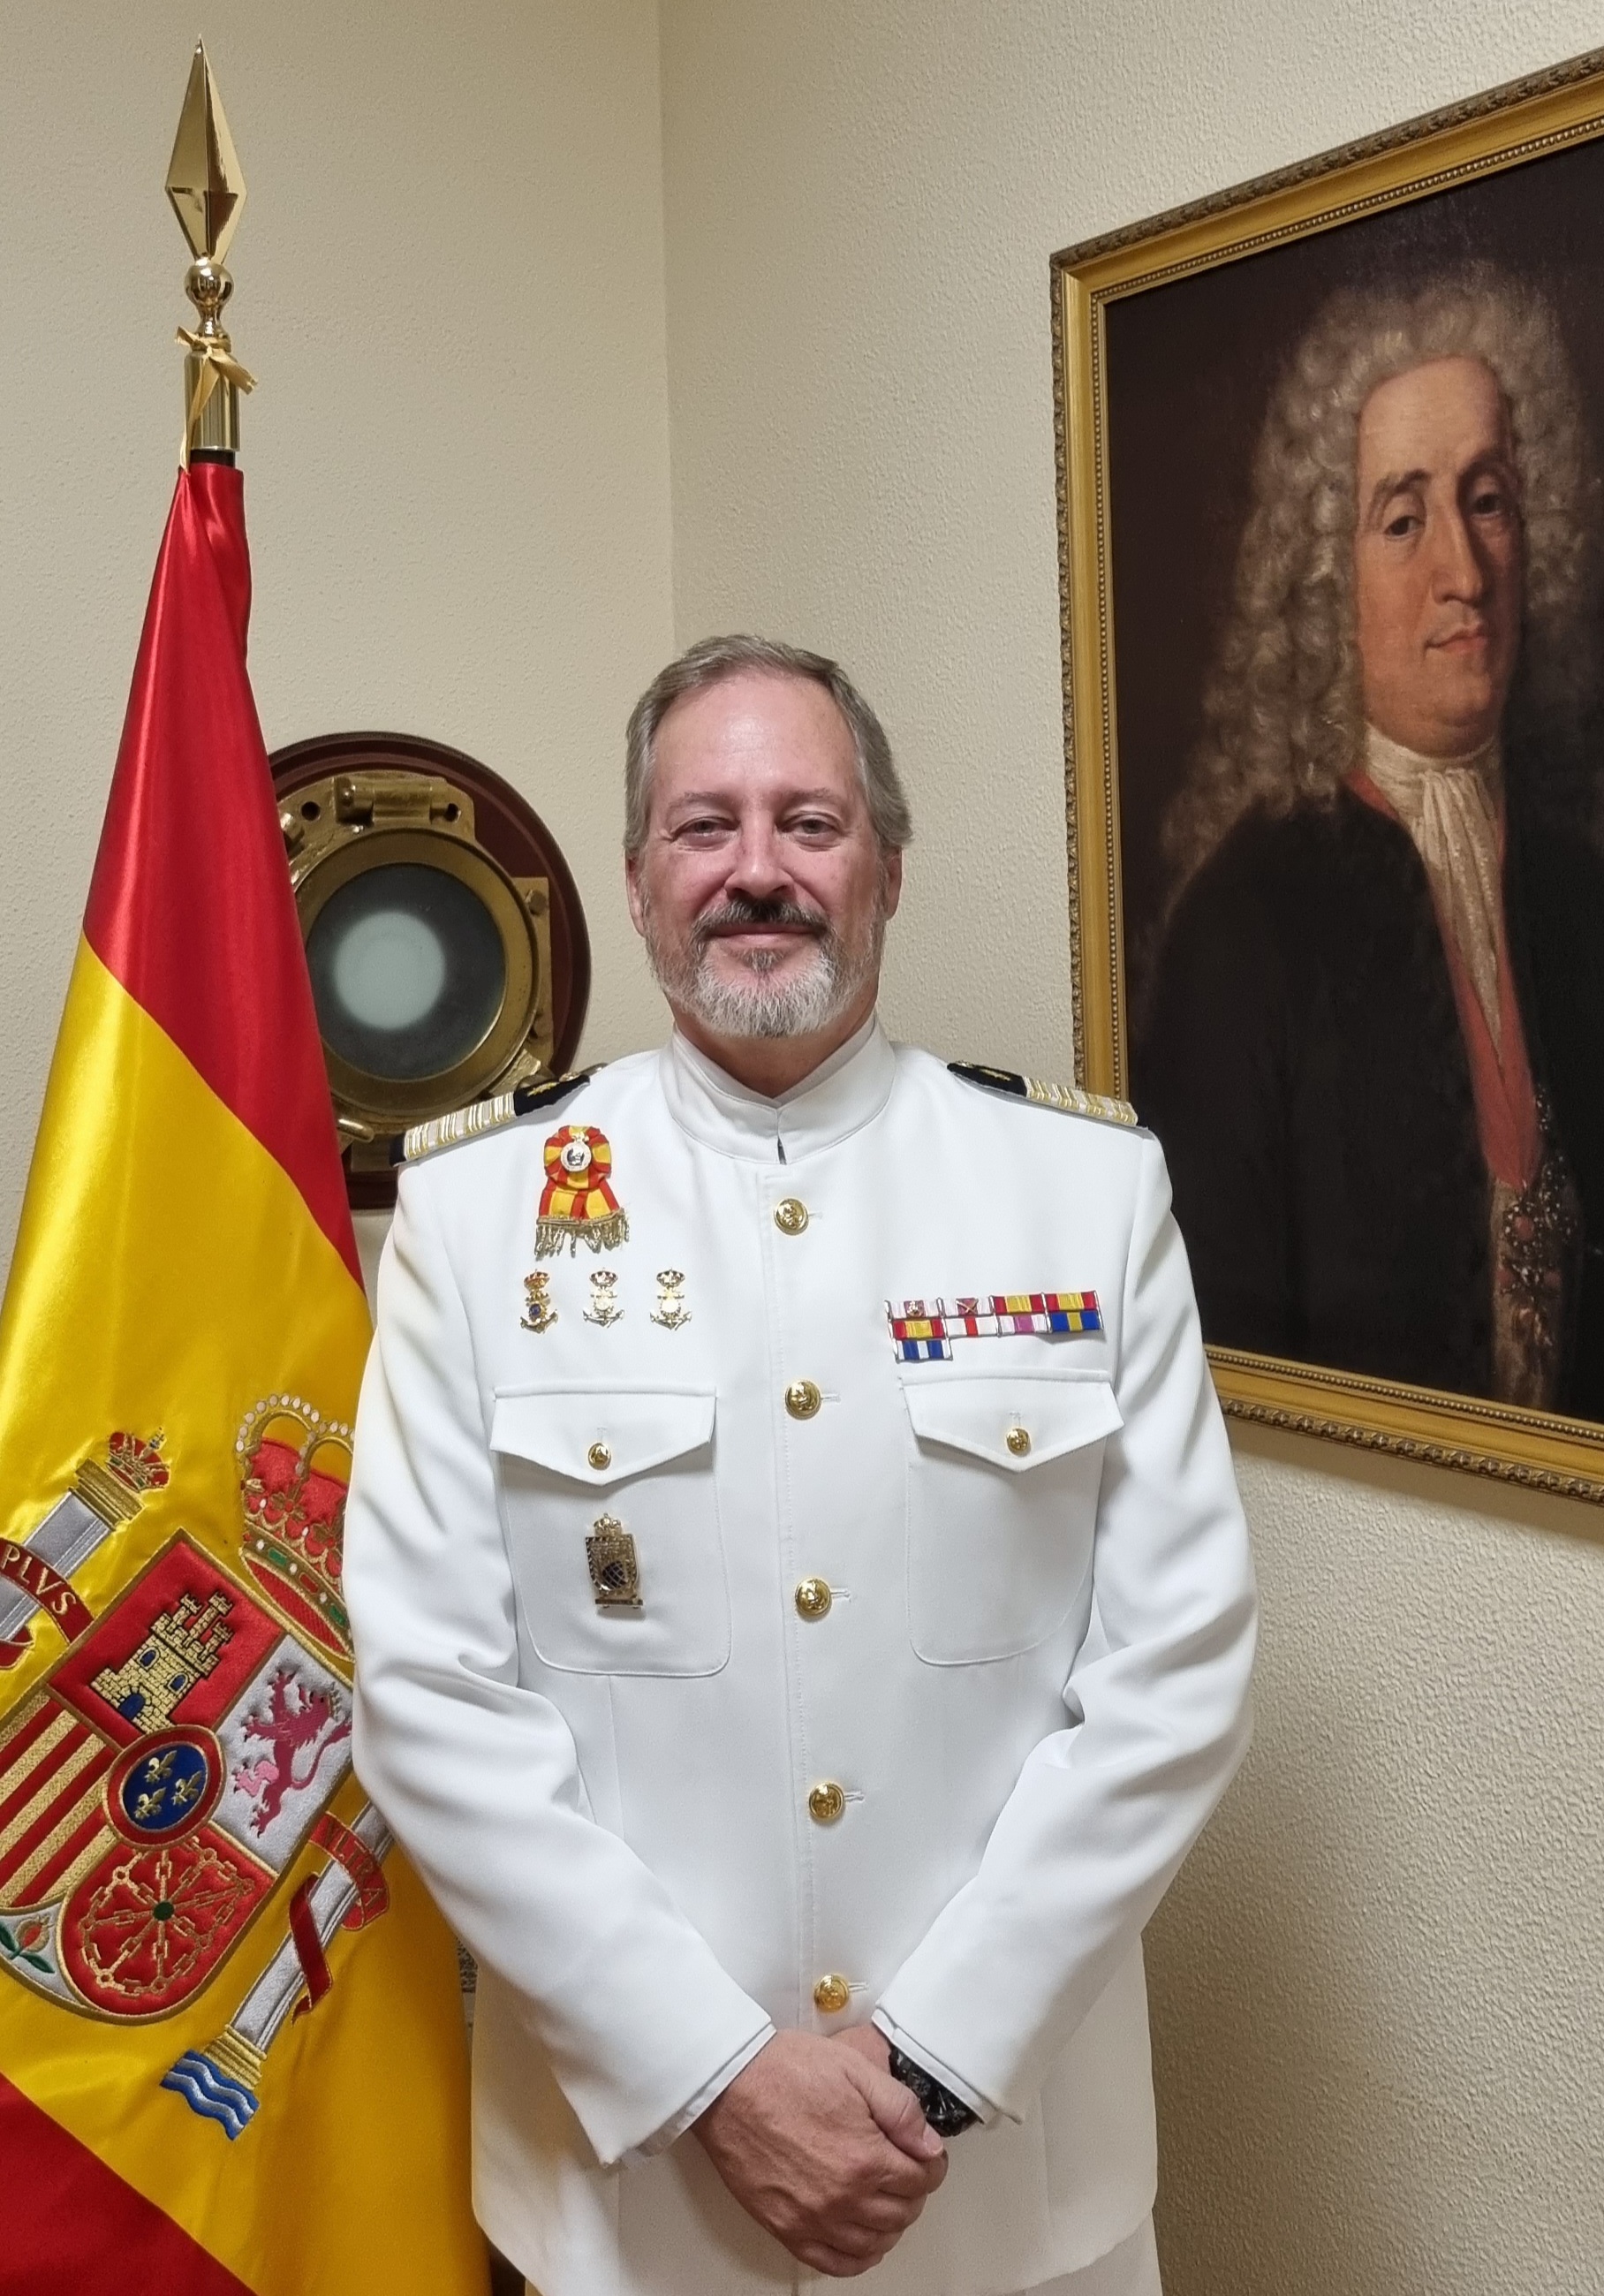 Coronel de Intendencia Director D. Javier González Antón